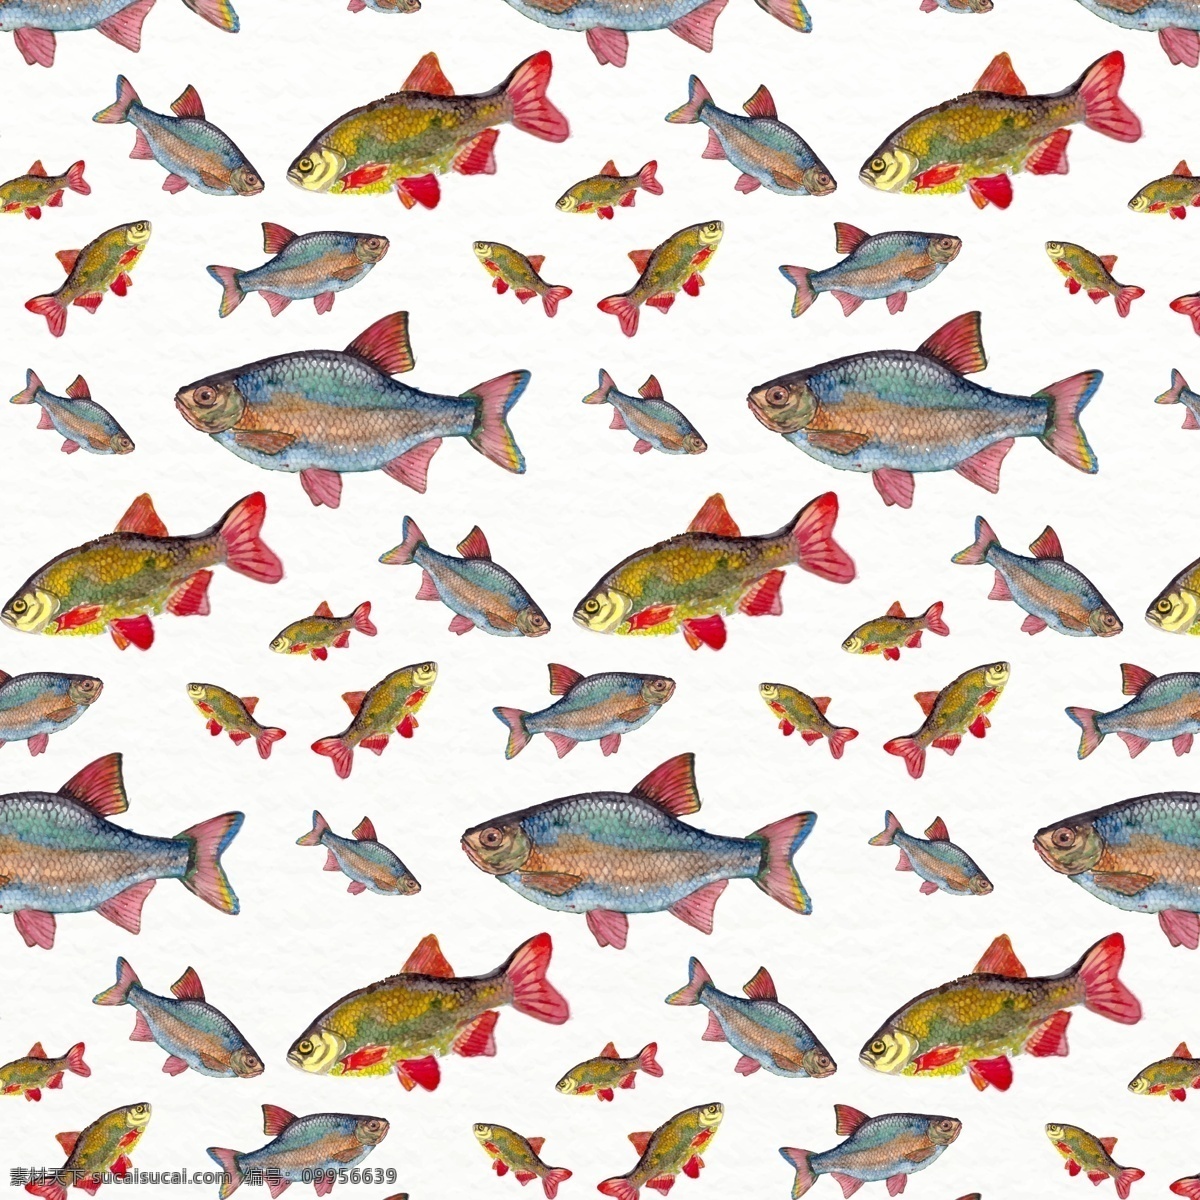 鱼类无缝背景 大鱼 小鱼 鱼类 矢量图 动物 彩绘 鱼 无缝背景费 矢量素材 ai格式